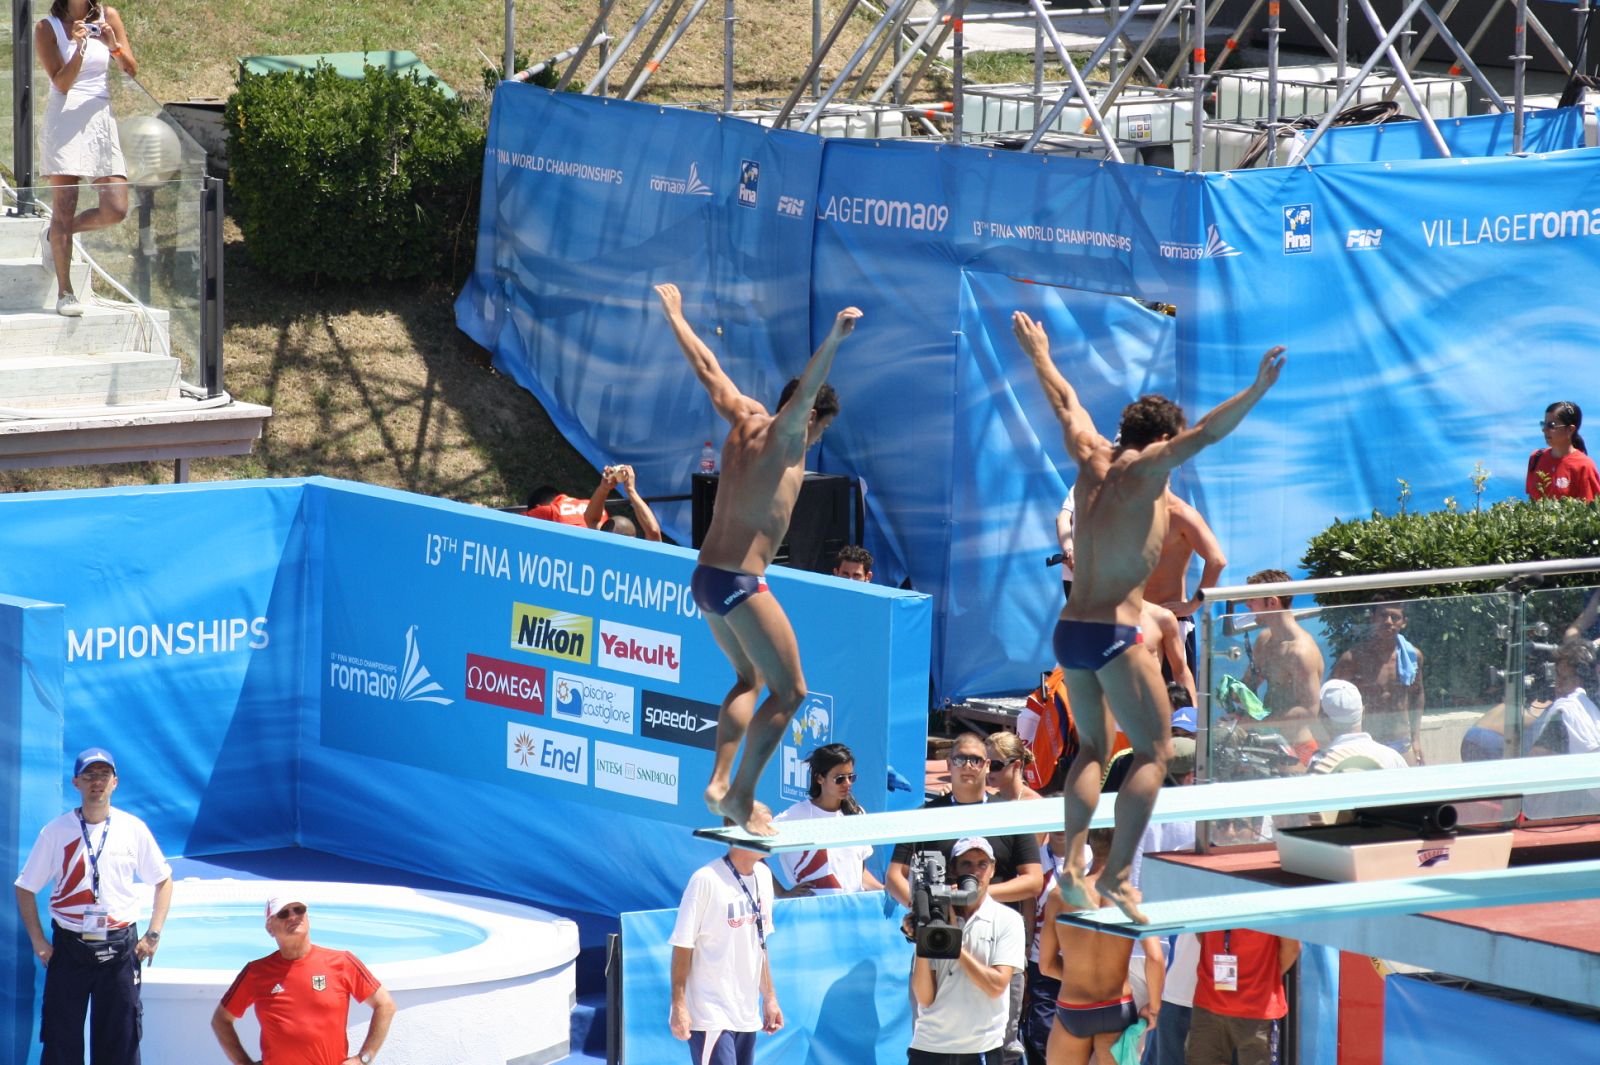 La pareja española formada por Carlos Calvo y Javier Illana ejecuta uno de sus saltos.